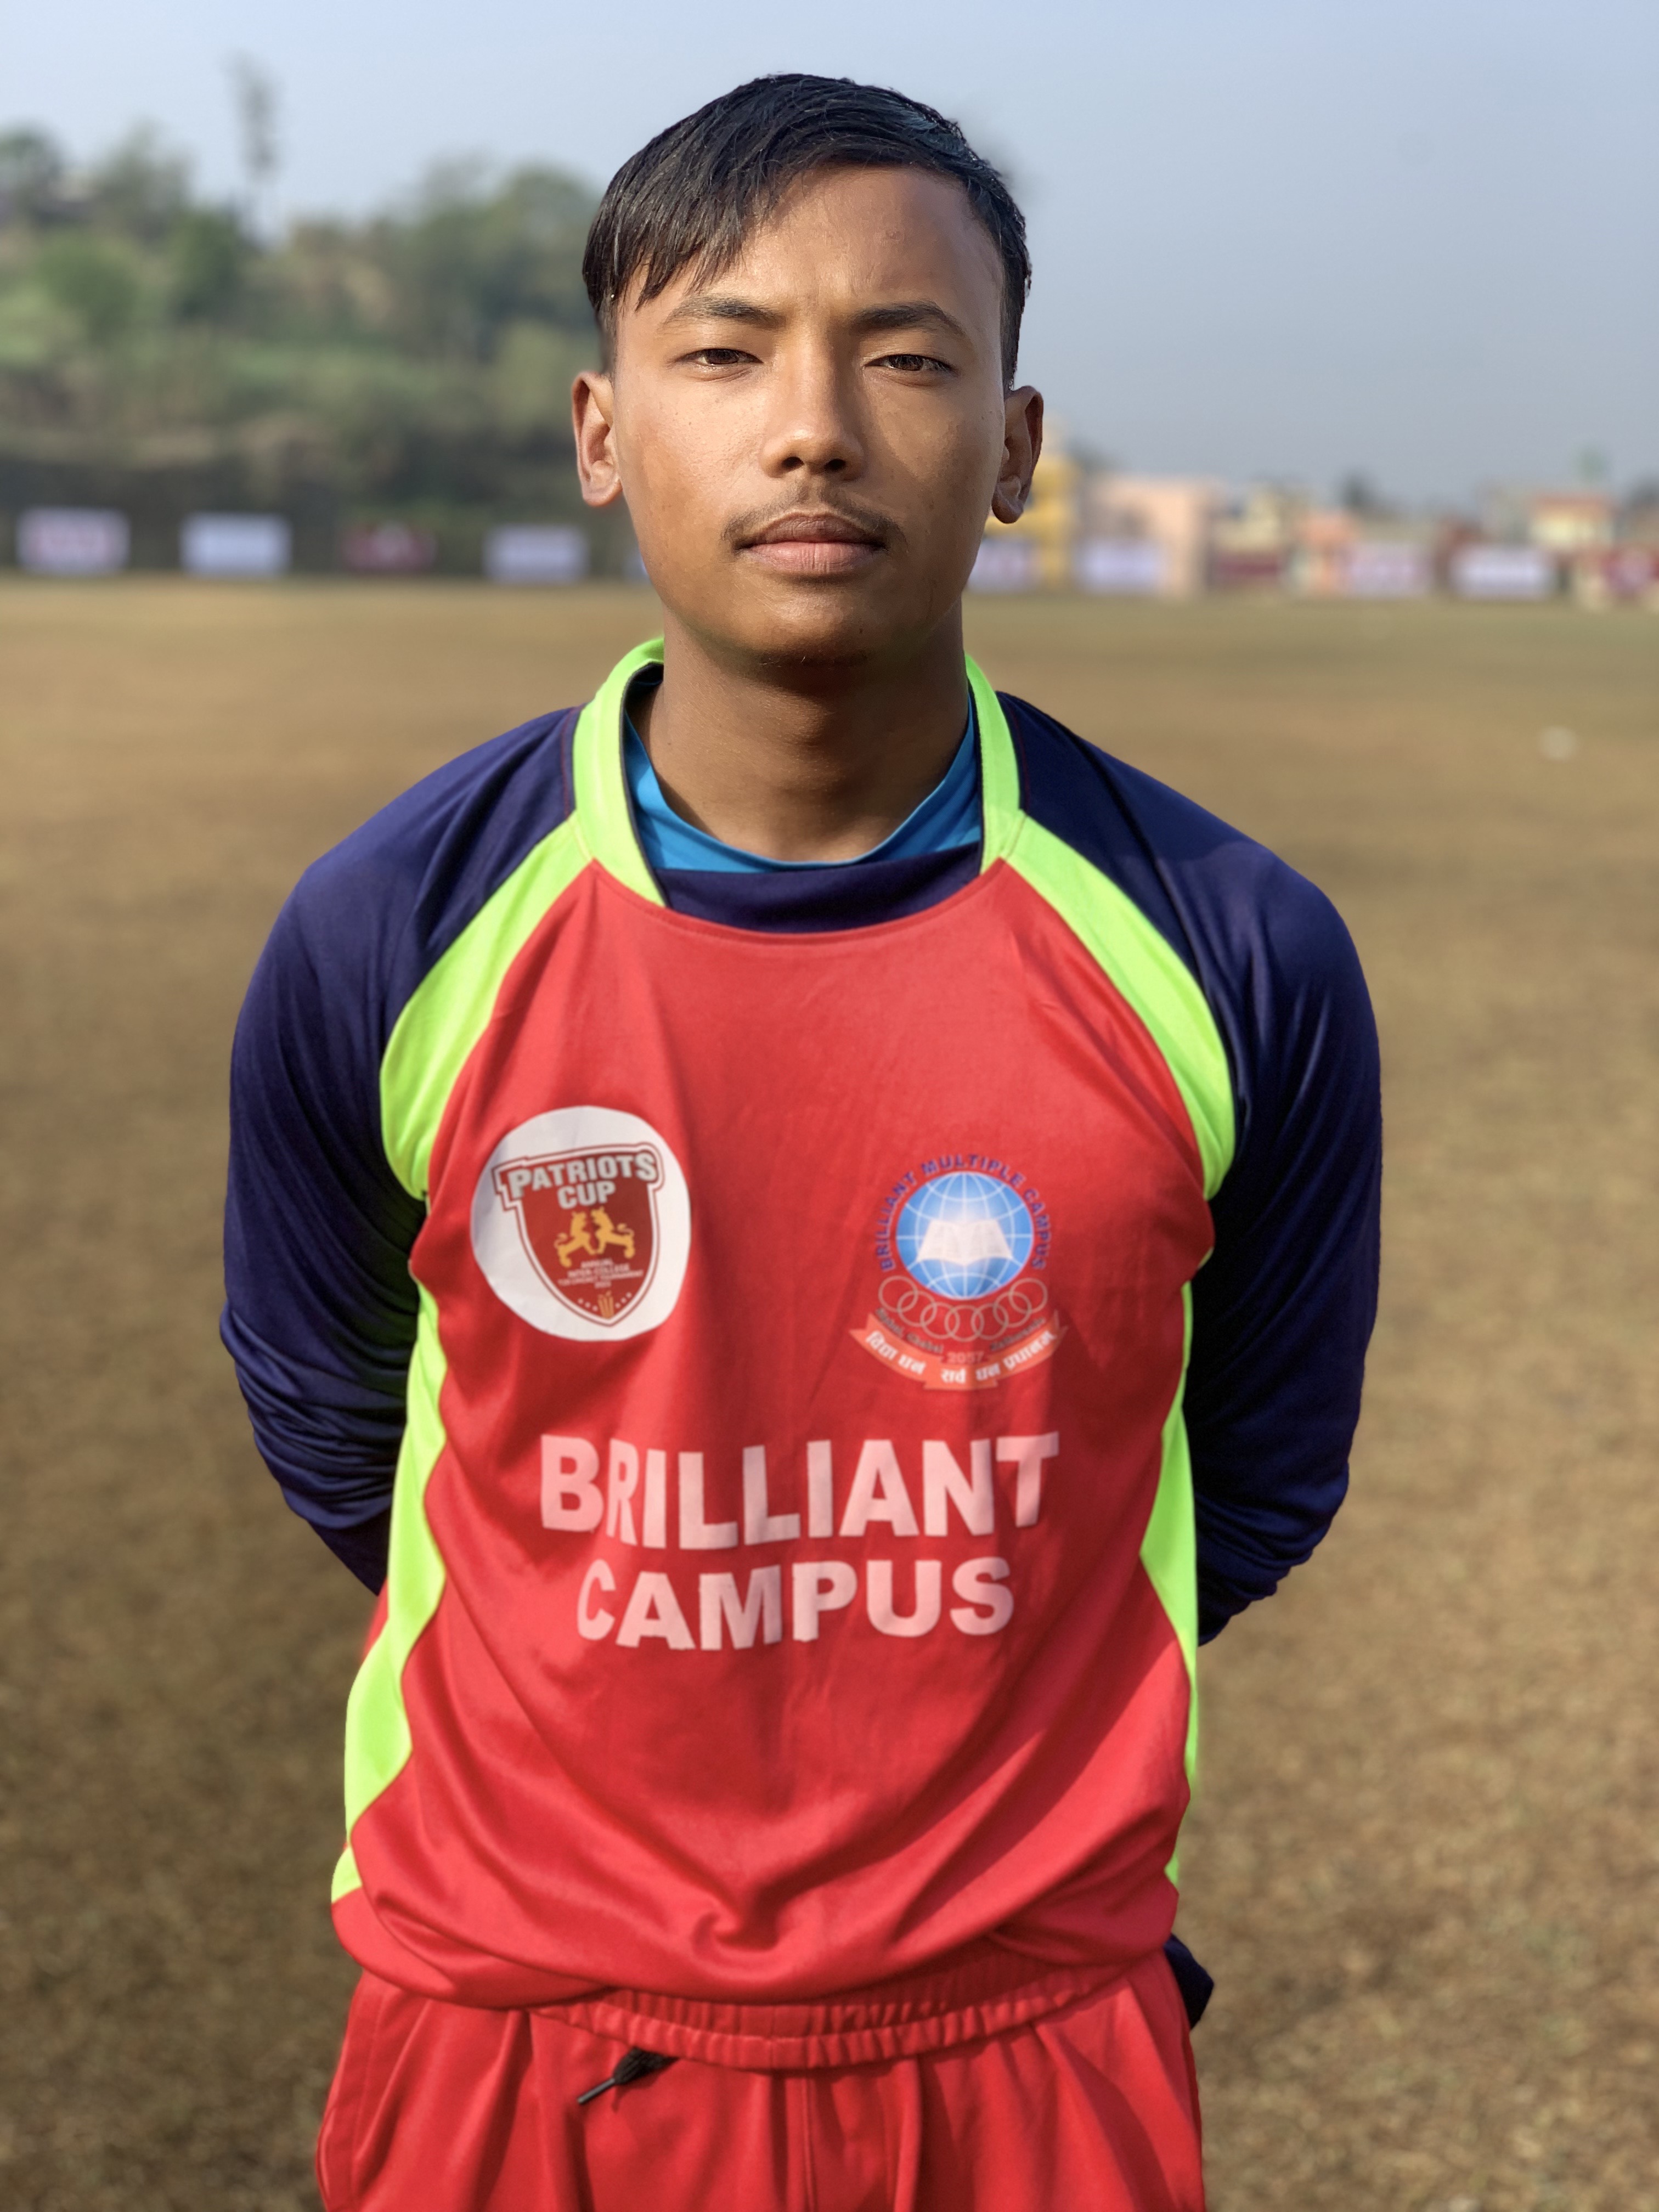 Rajkumar Shrestha